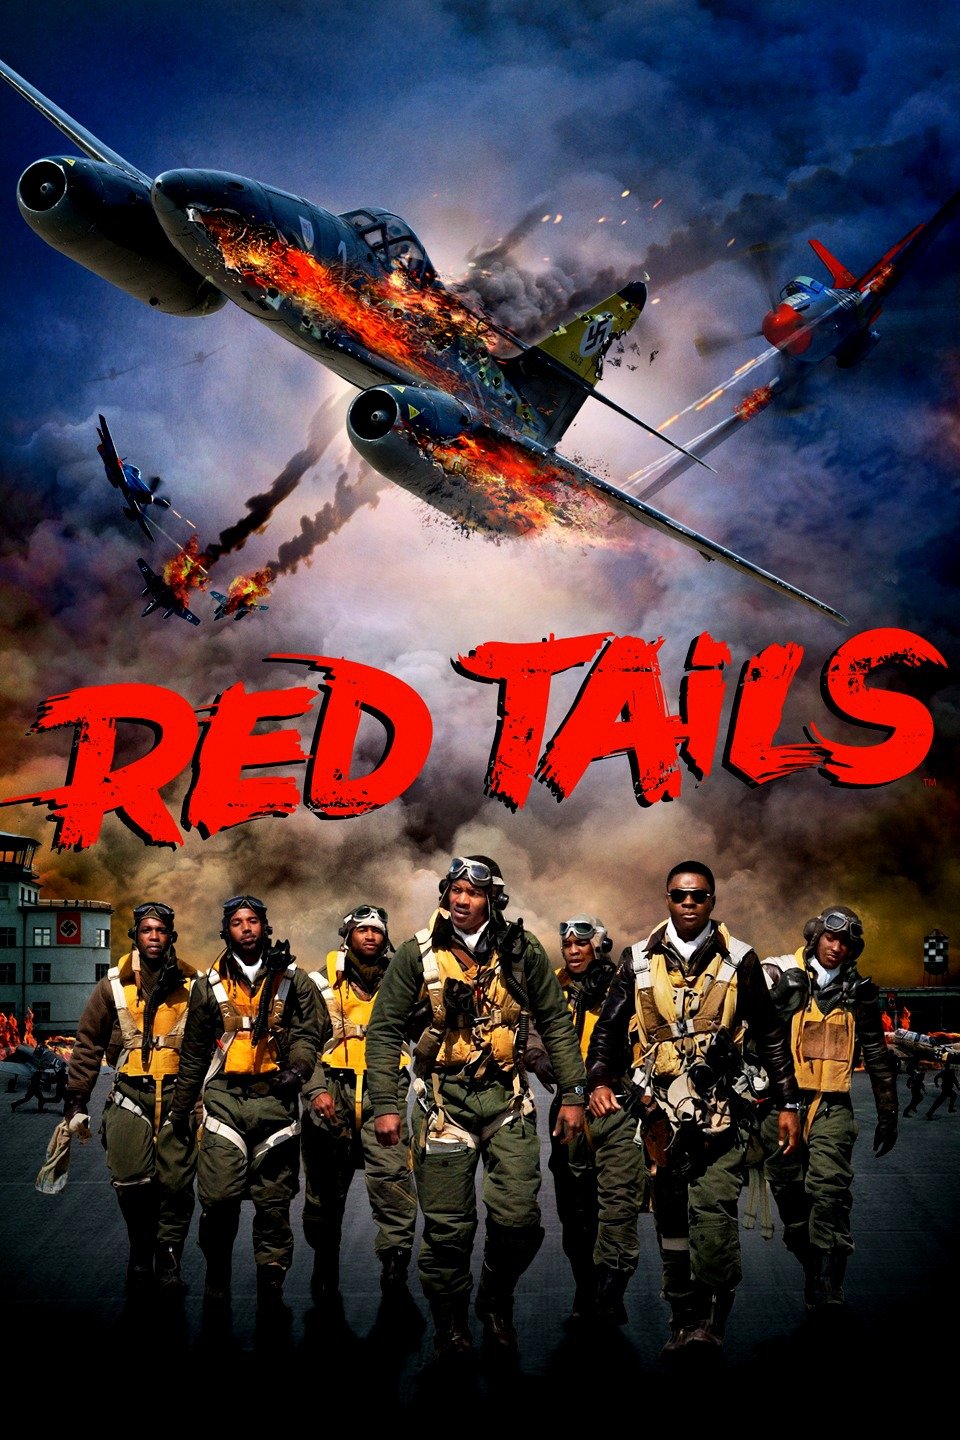 [MINI Super-HQ] Red Tails (2012) สงครามกลางเวหาของเสืออากาศผิวสี [1080p] [พากย์อังกฤษ DTS] [Soundtrack บรรยายไทย] [เสียงอังกฤษ + ซับไทย] [OPENLOAD]